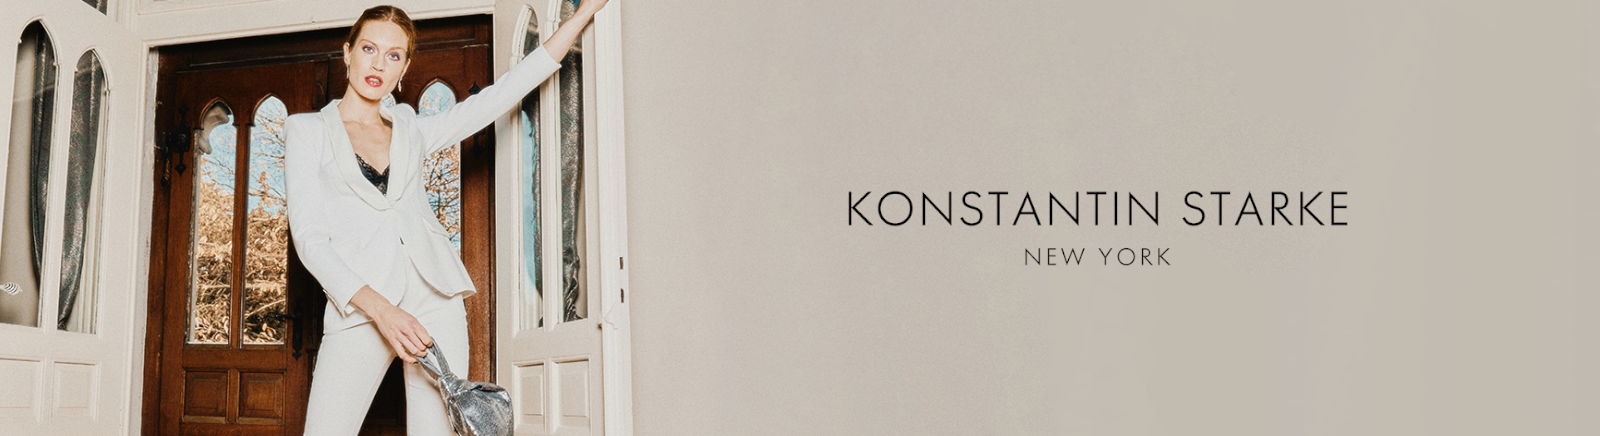 Prange: Konstantin Starke Sandalen für Damen online kaufen online shoppen